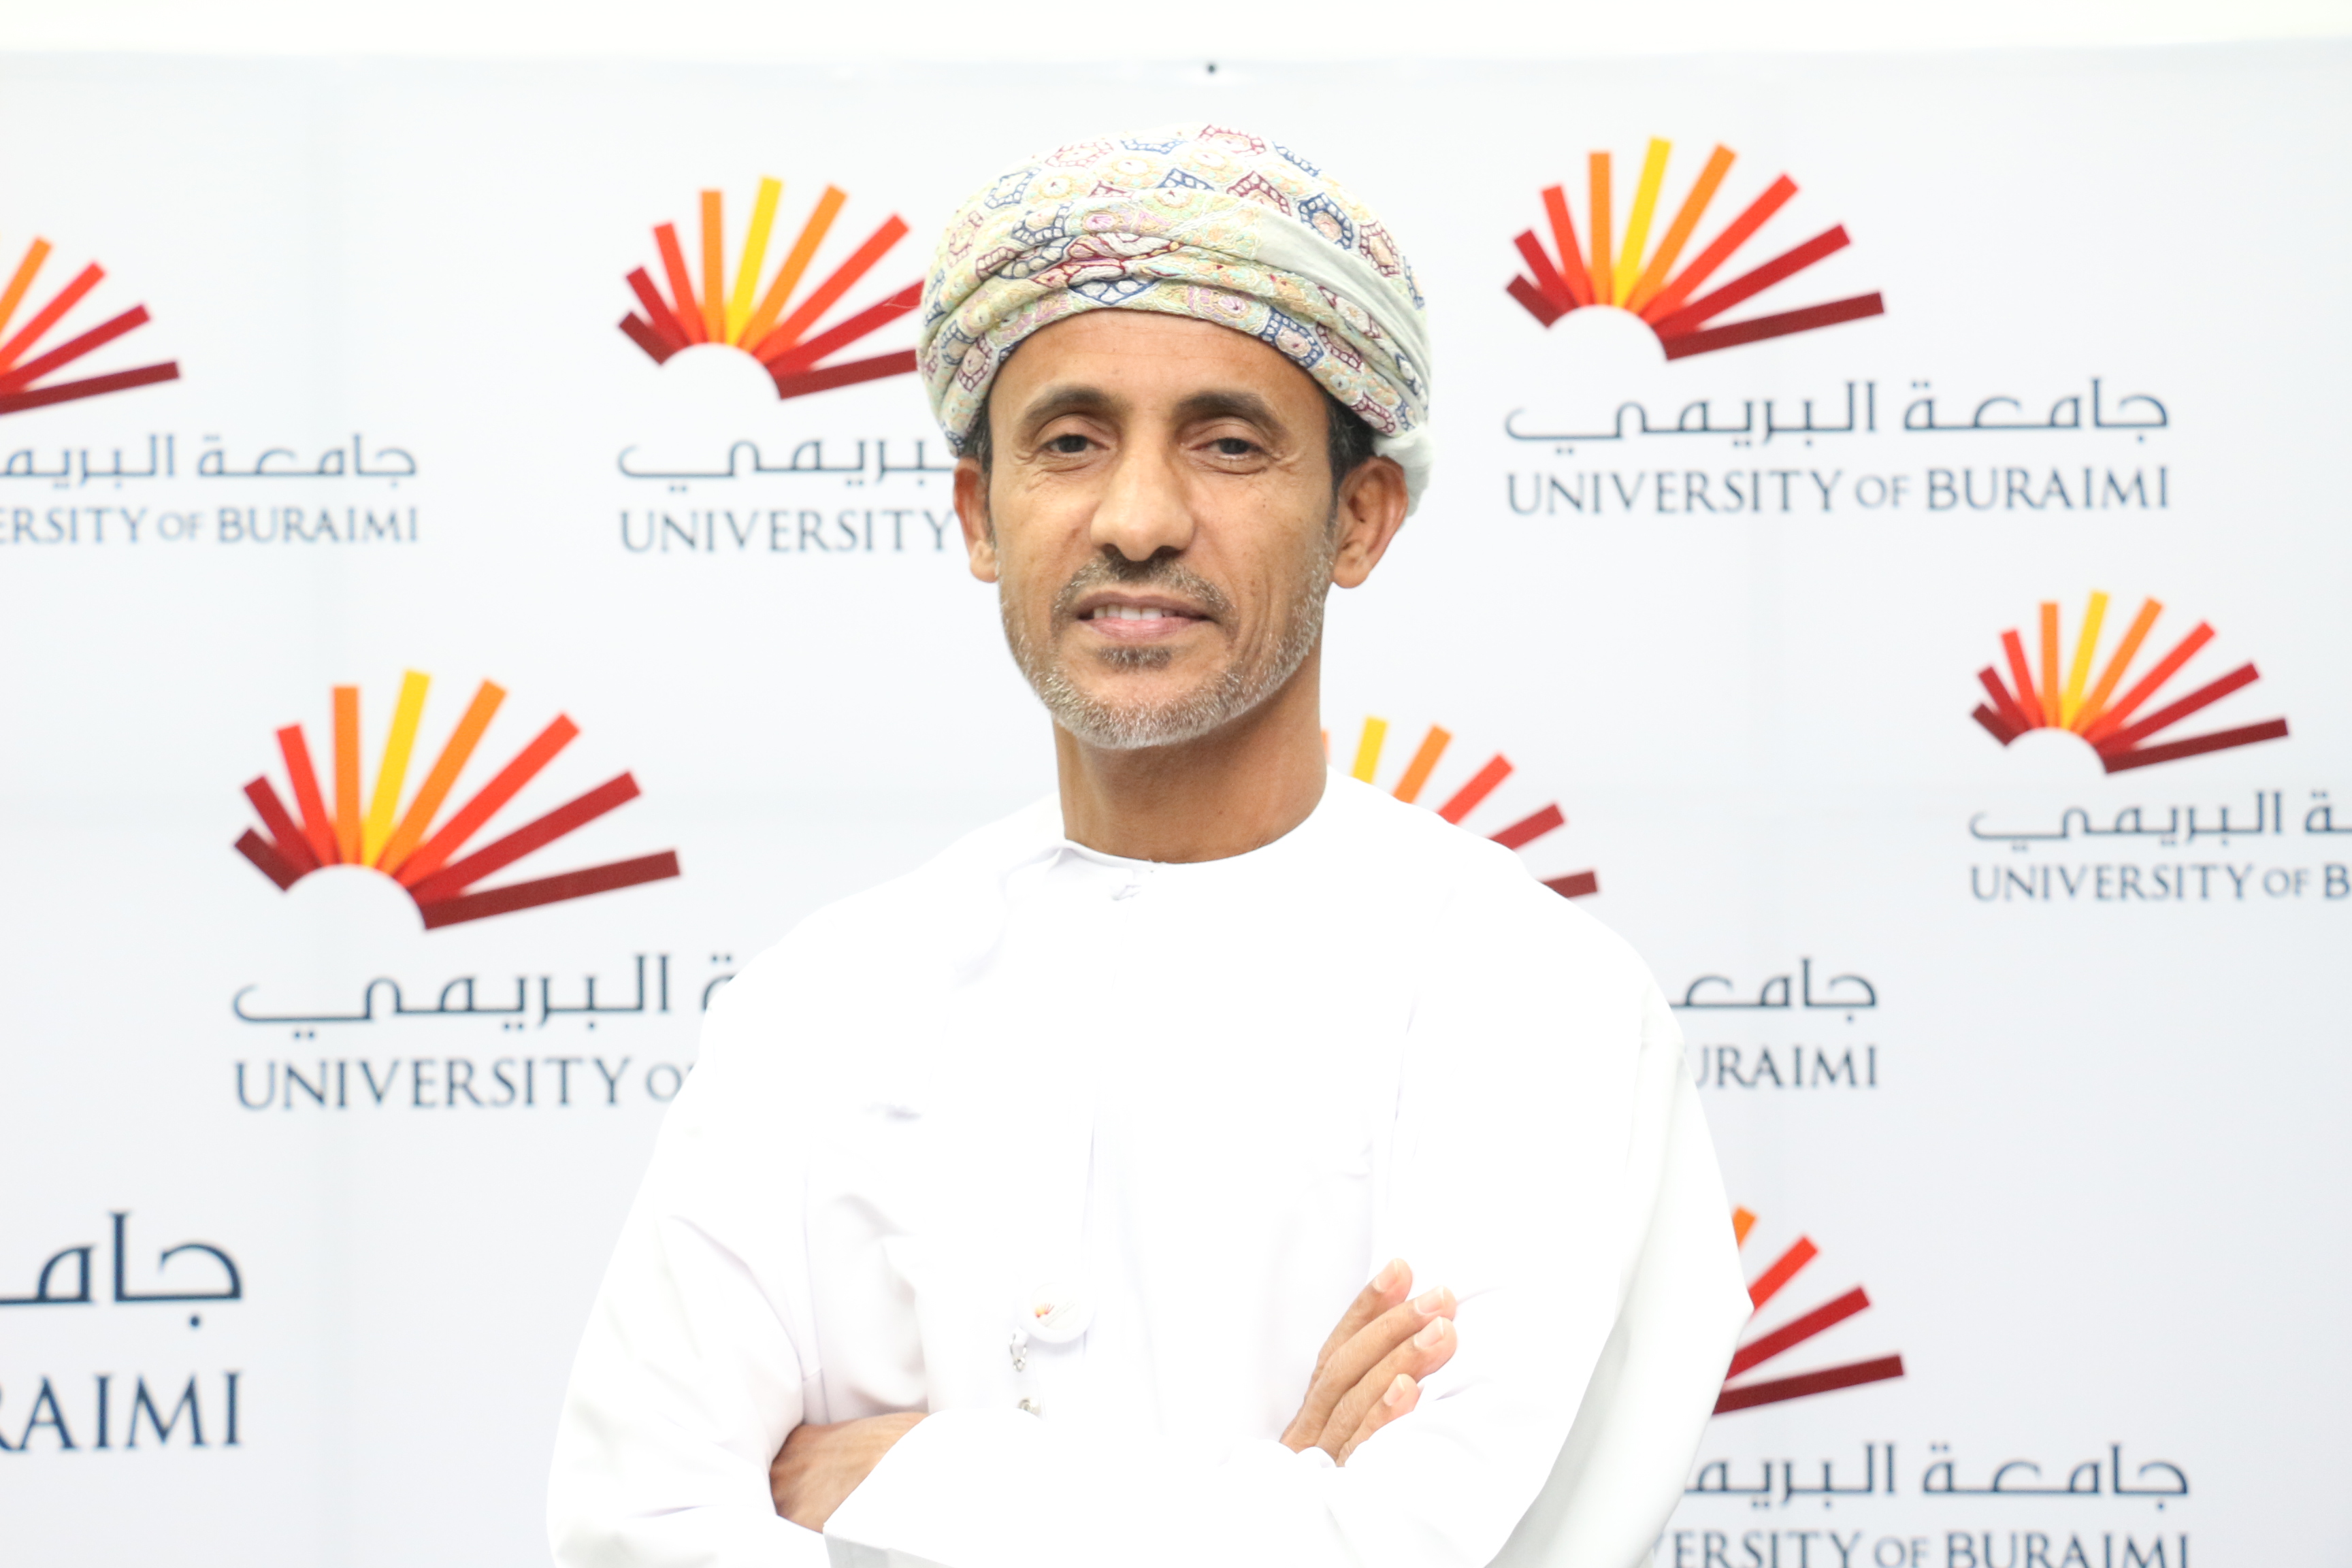 Dr. Hilal Alrahbi